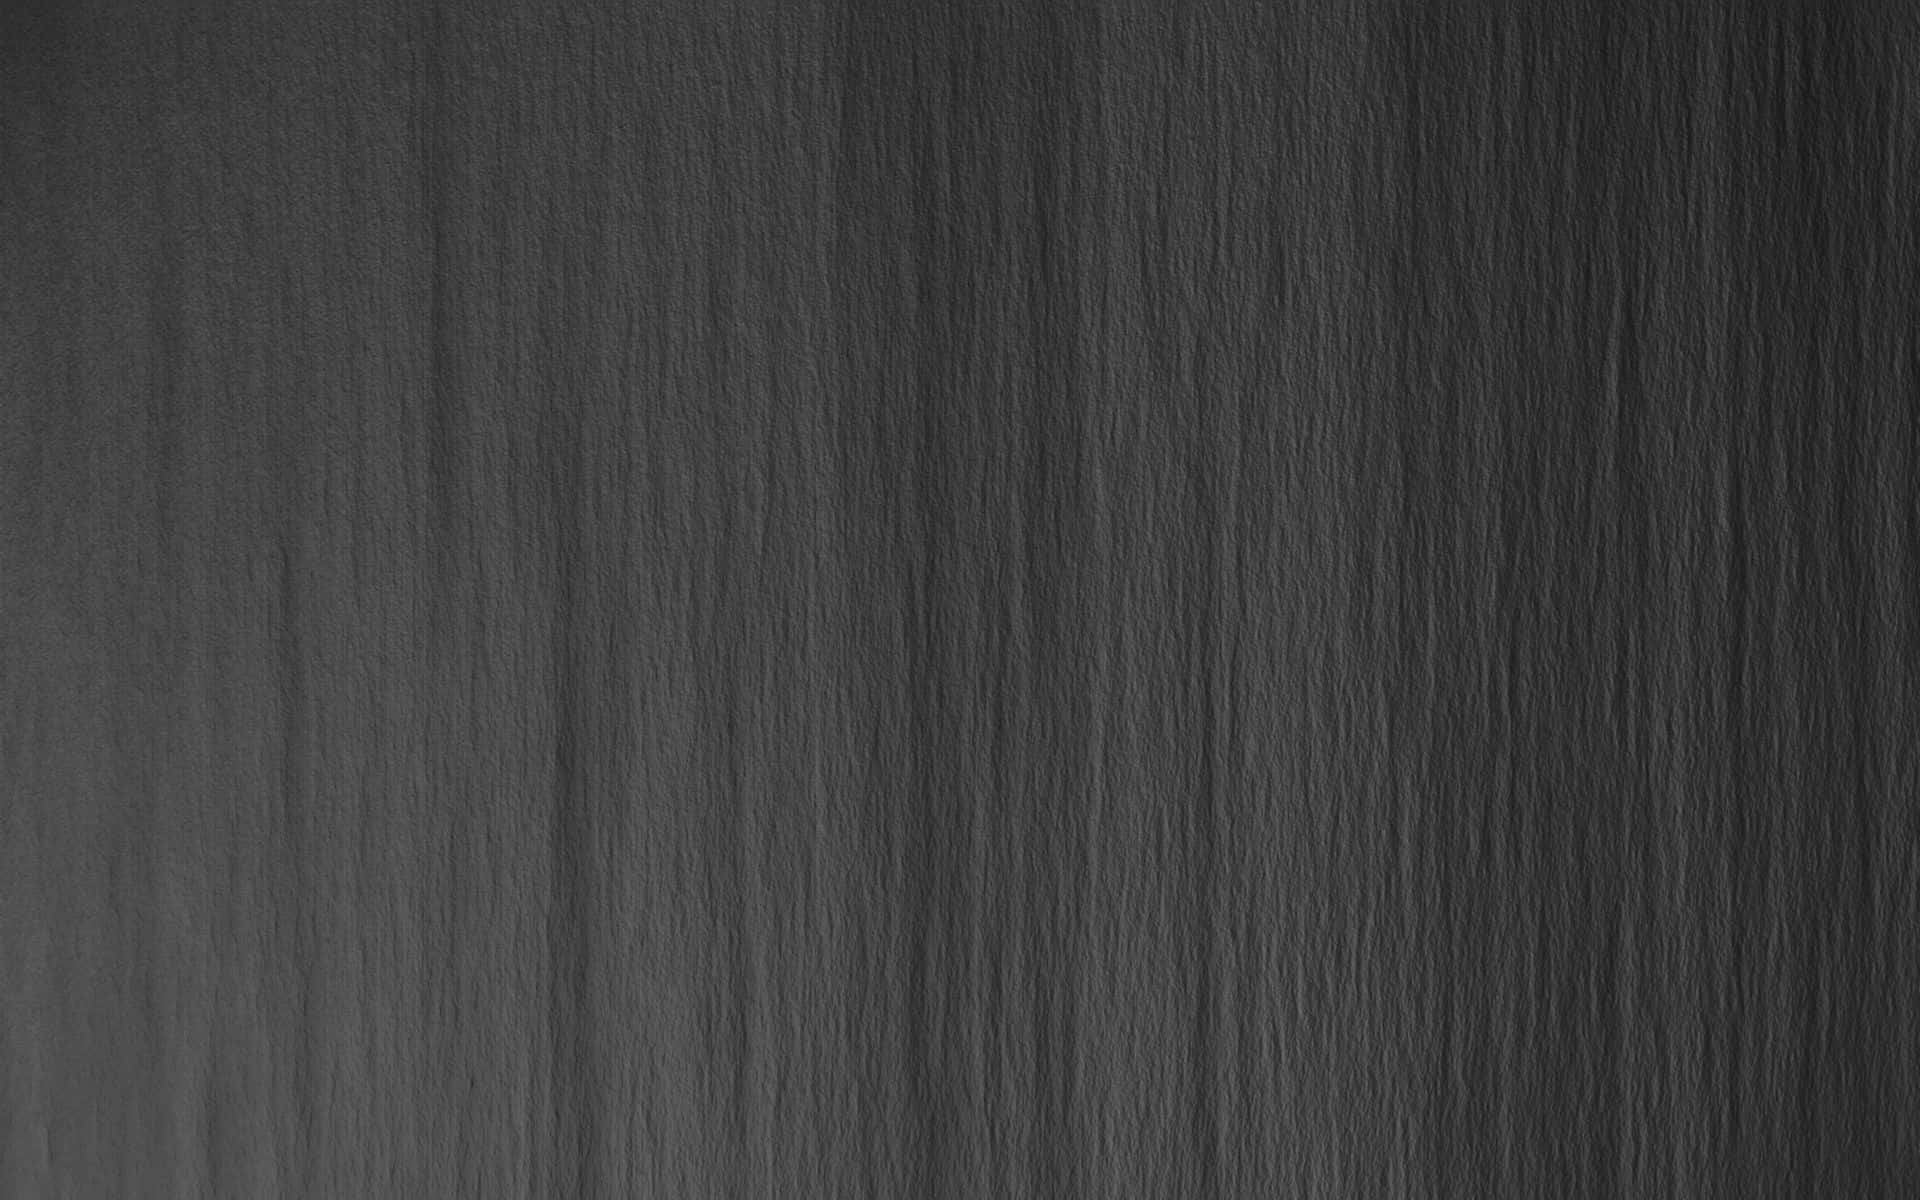 Dark Gray Wood Texture Background